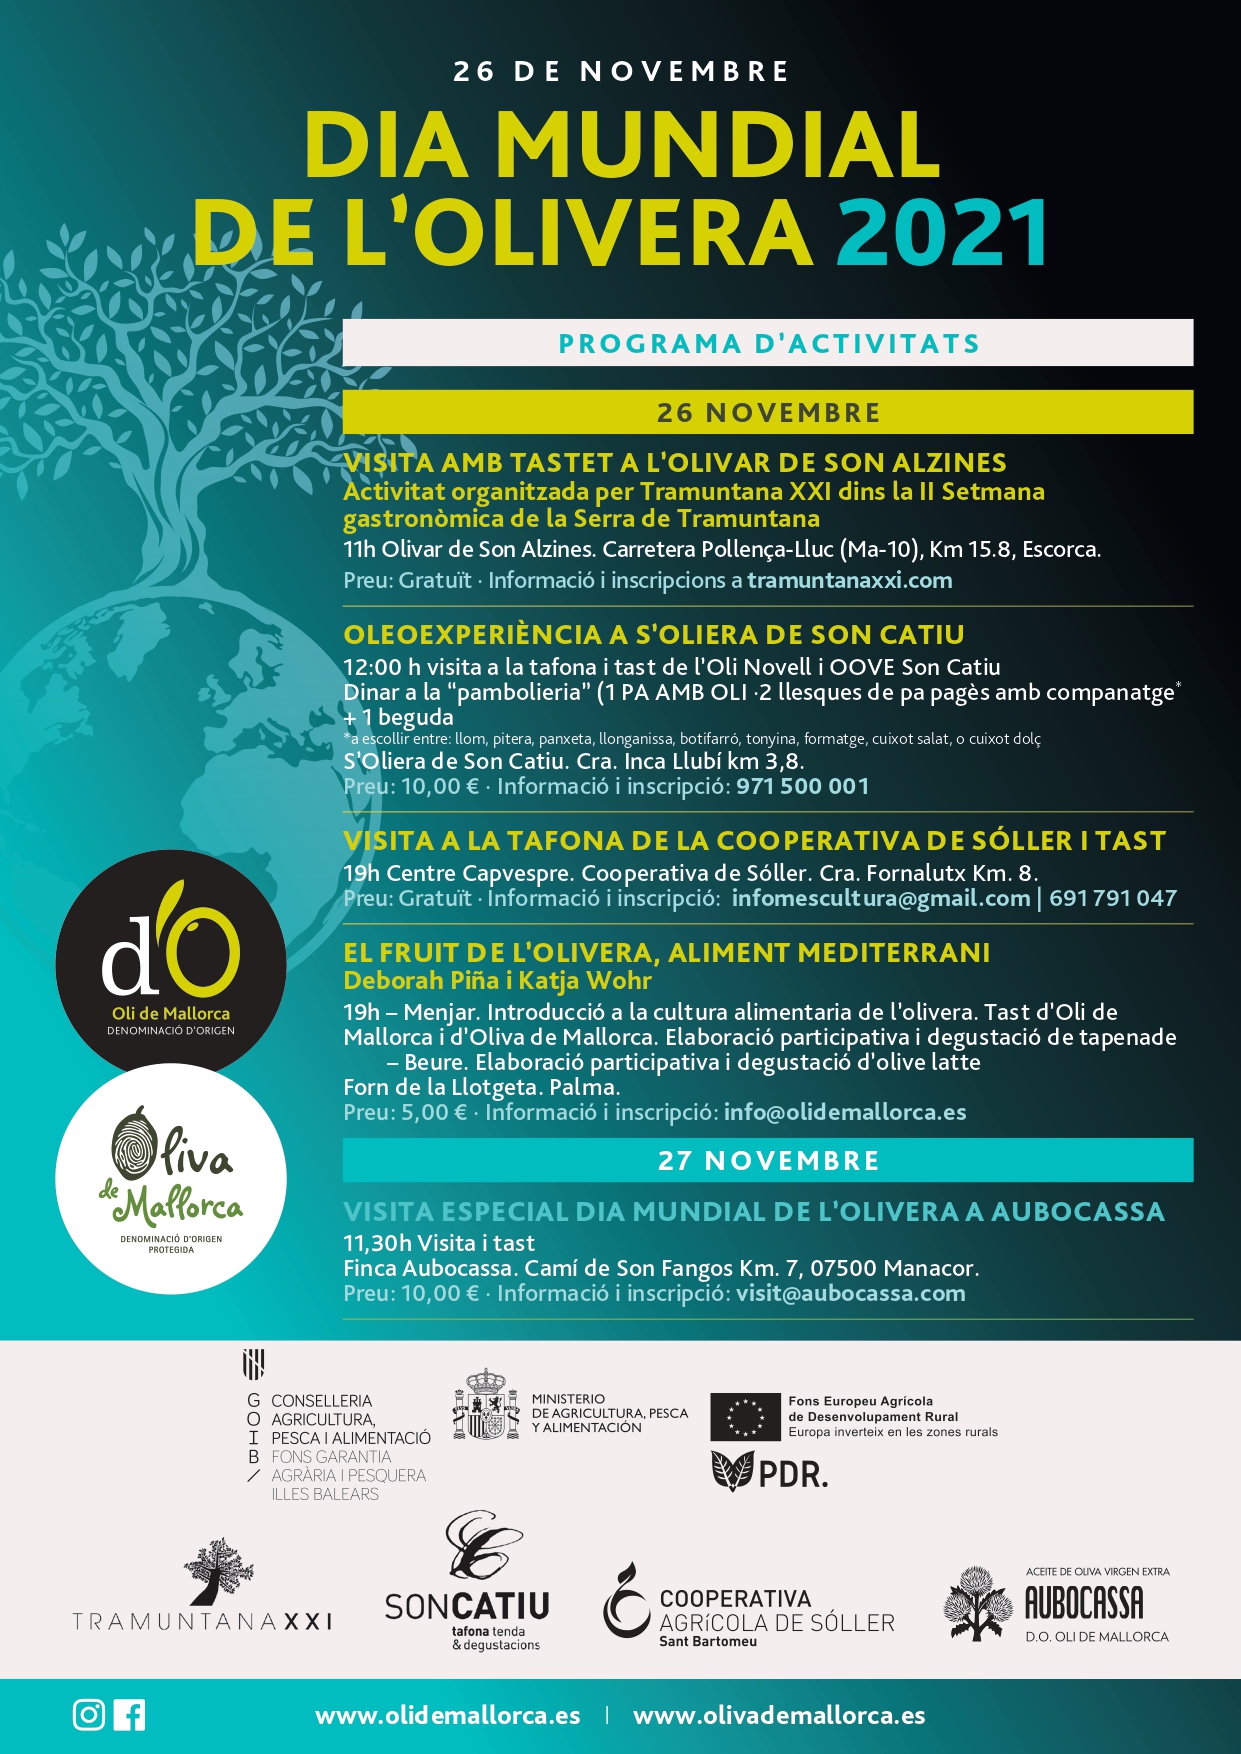 Dia mundial de l'olivera - Notícies - Illes Balears - Productes agroalimentaris, denominacions d'origen i gastronomia balear